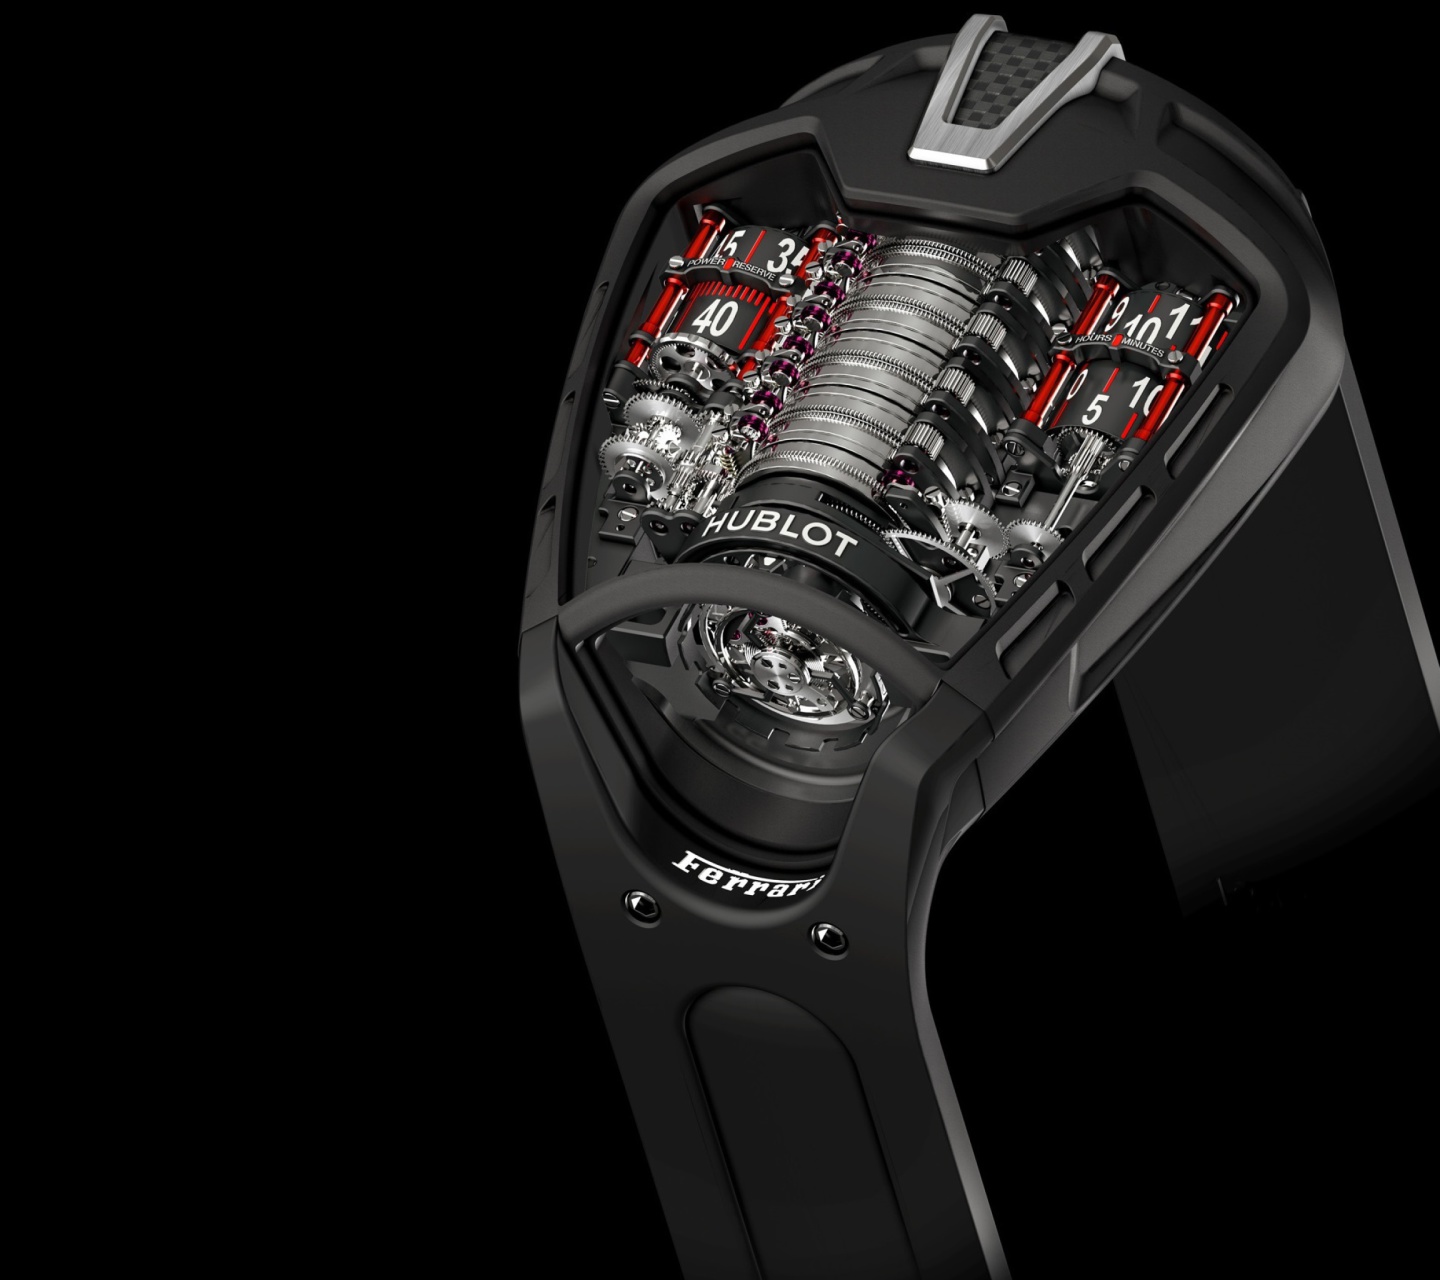 Sfondi Hublot - Swiss Luxury Watches & Chronograph 1440x1280